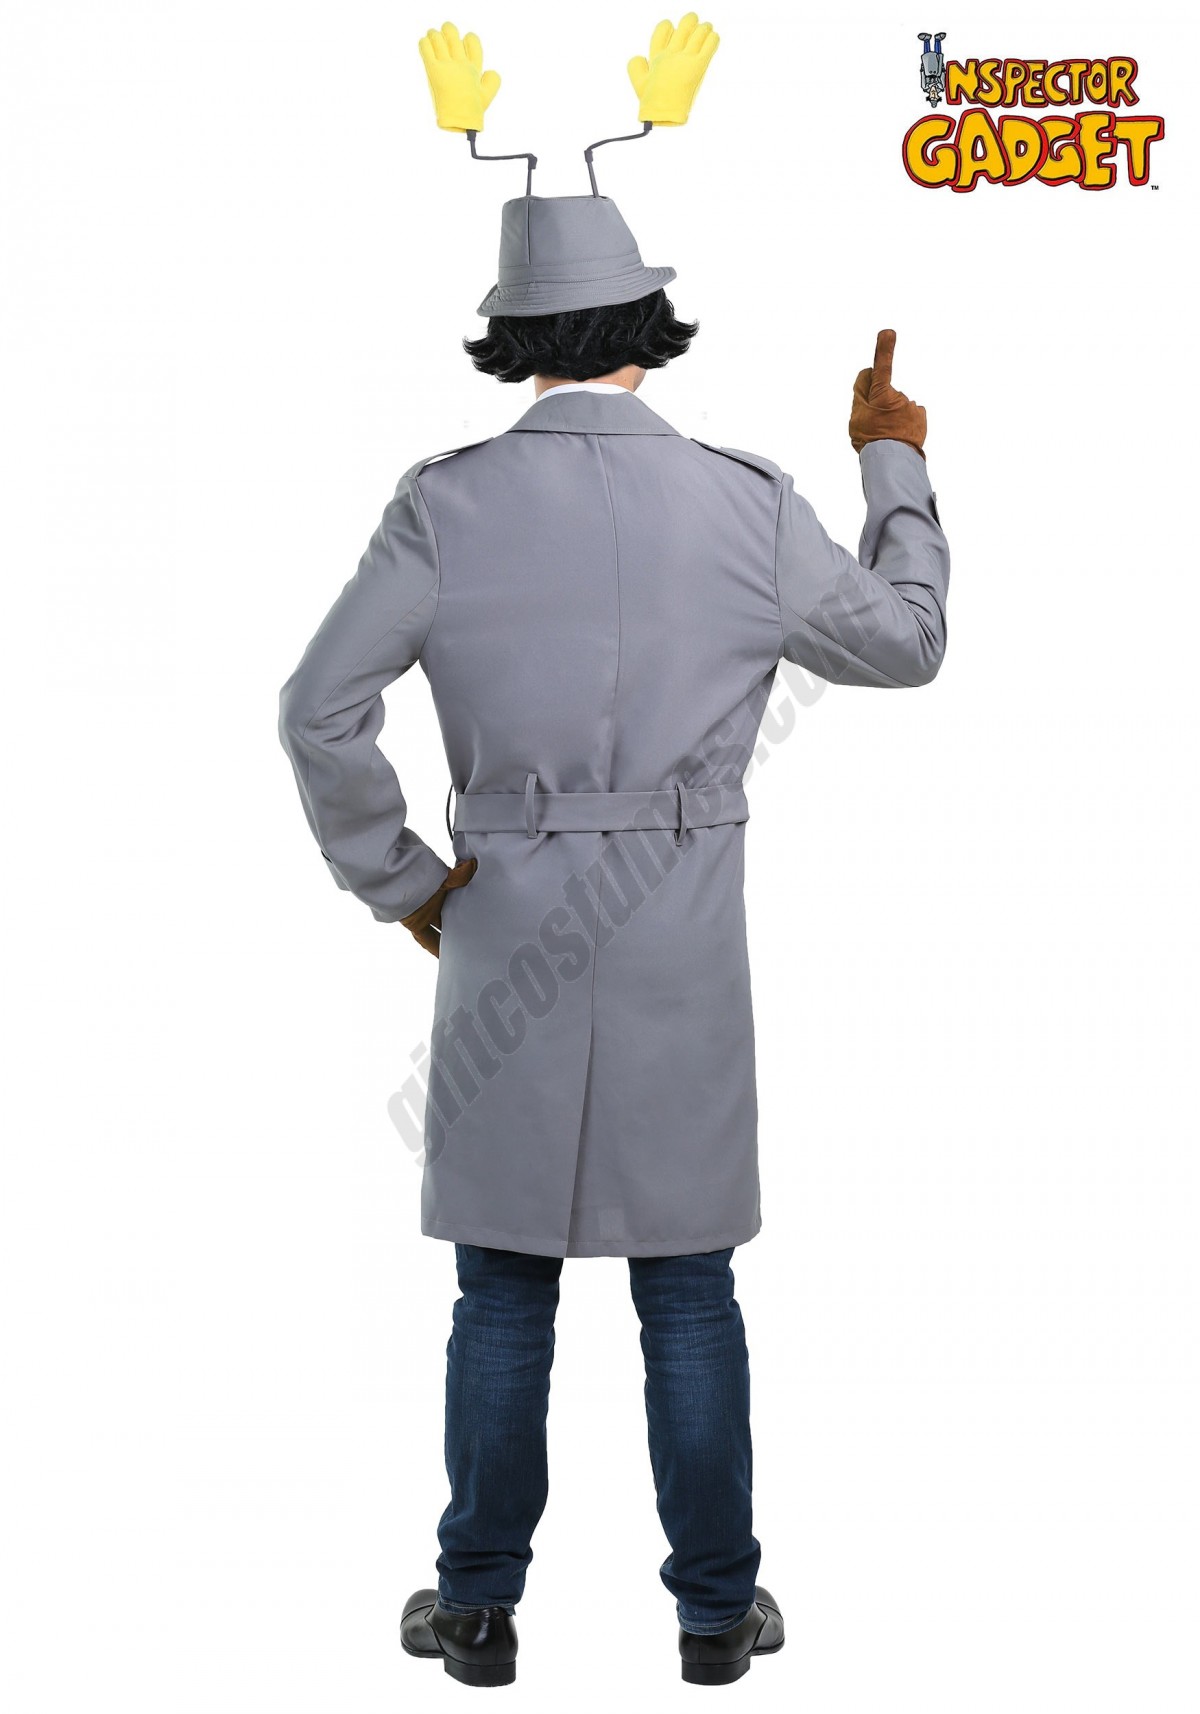 Men's Inspector Gadget Costume Promotions - -1